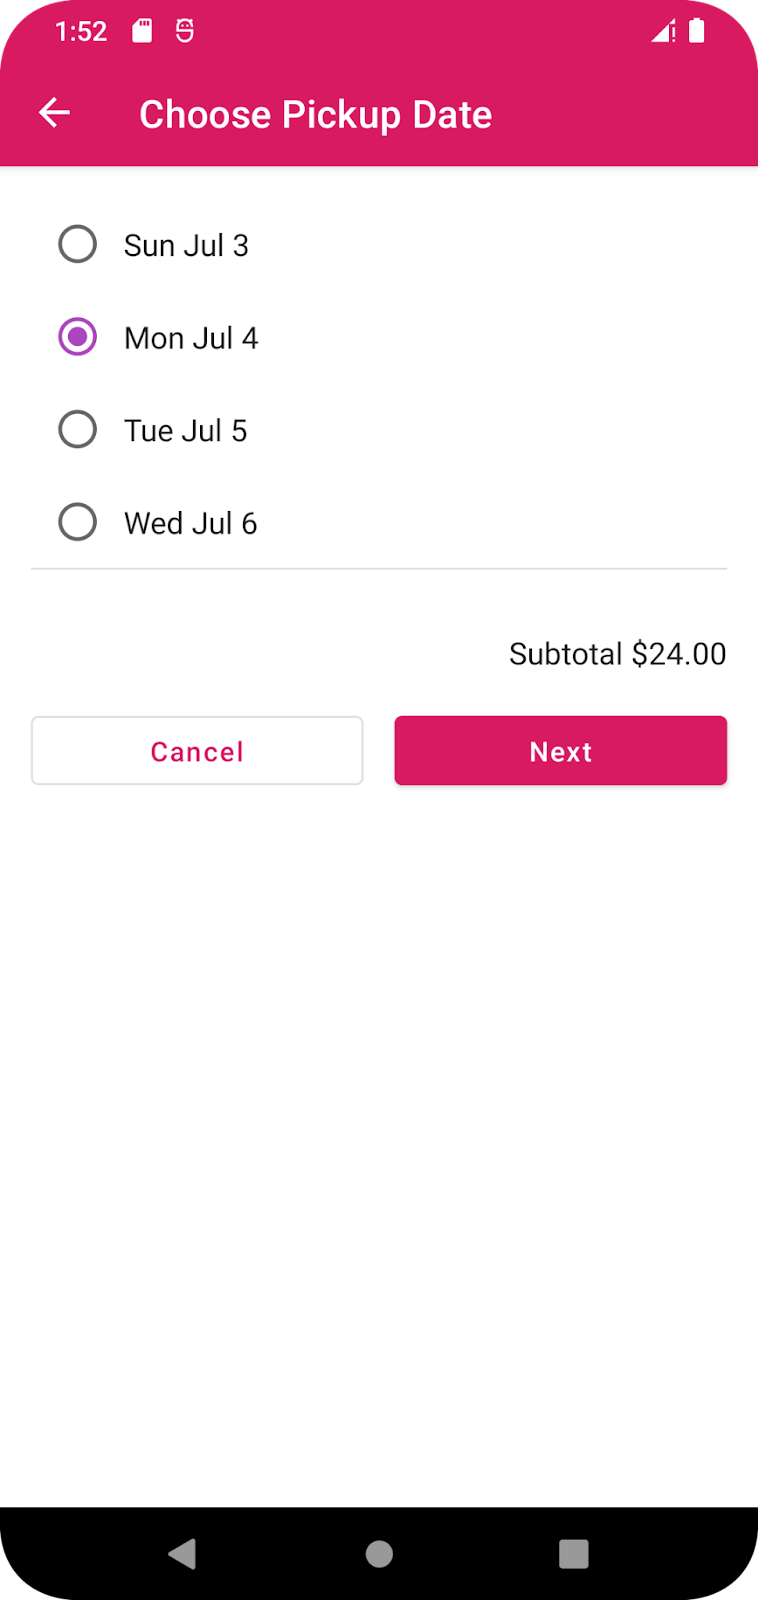 La app de Cupcake presenta al usuario opciones para la fecha de retiro.